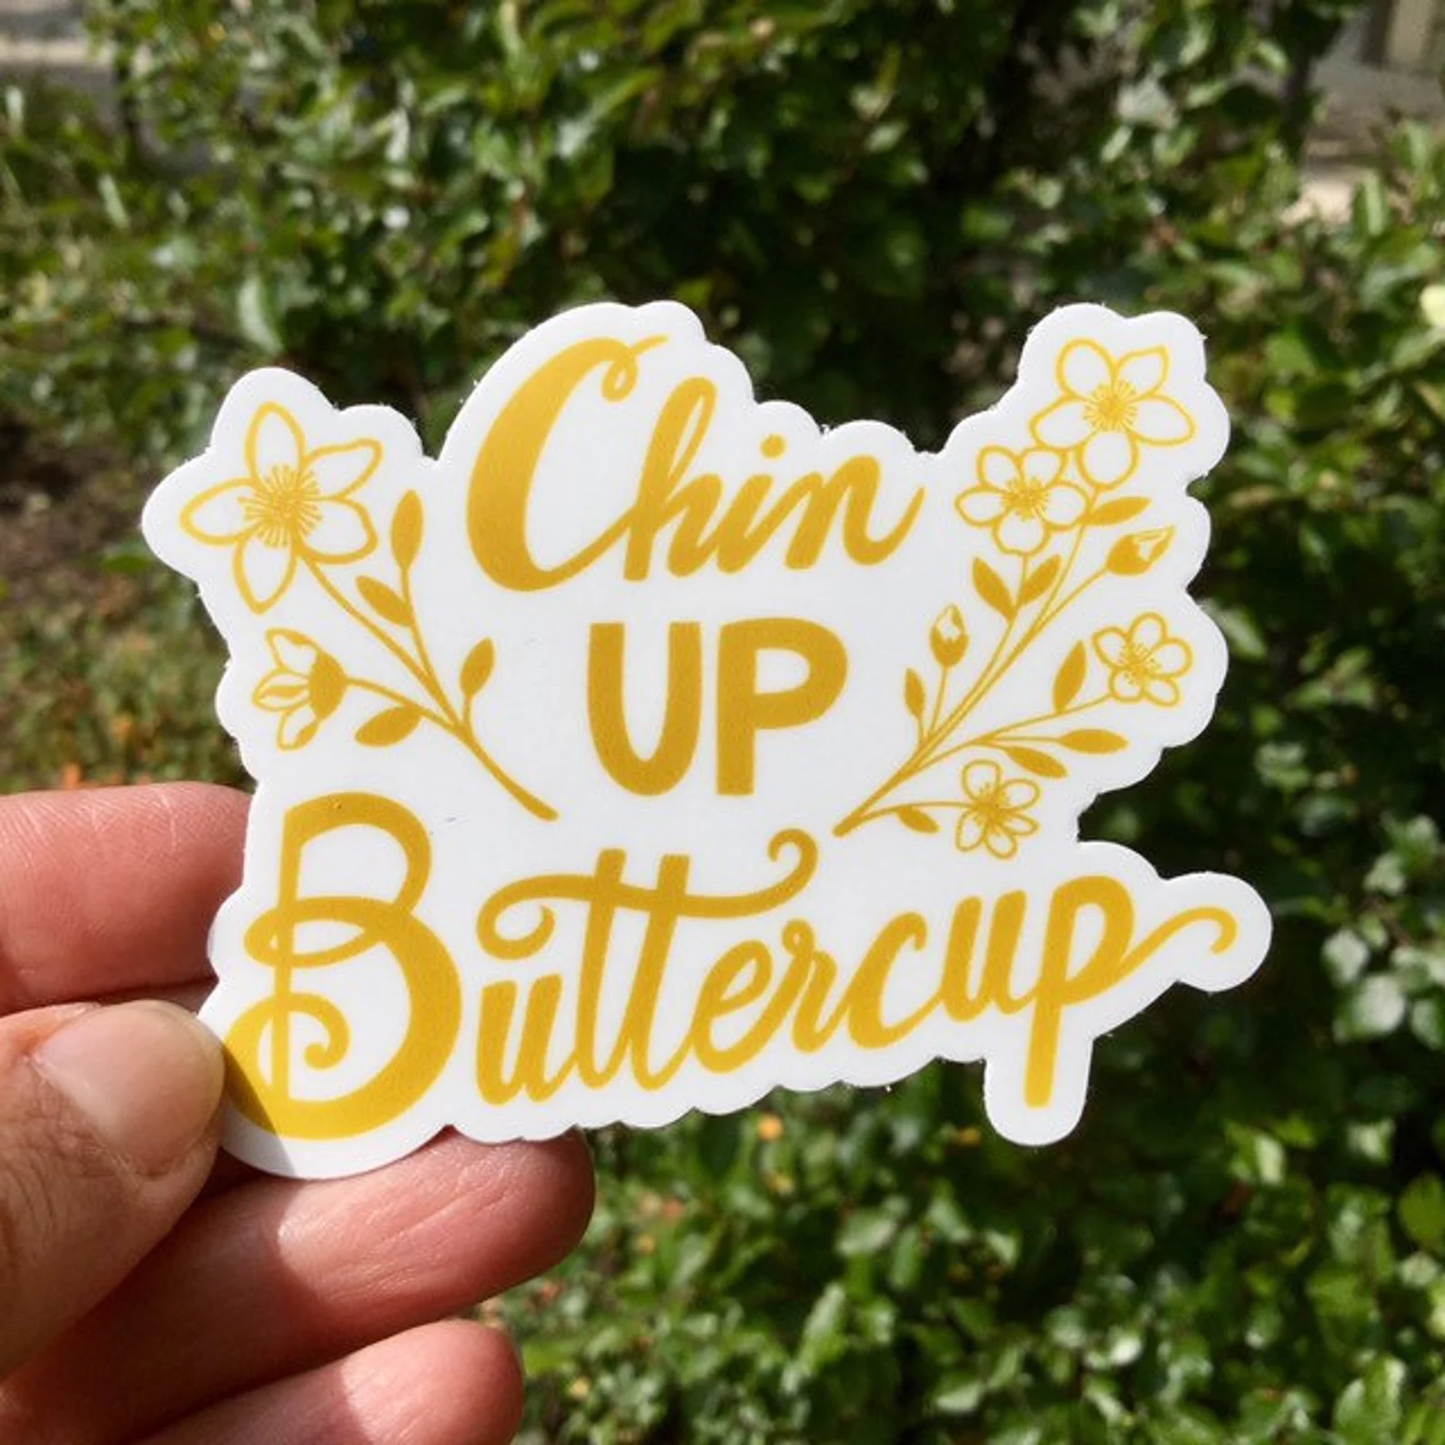 chin up buttercup vinyl sticker